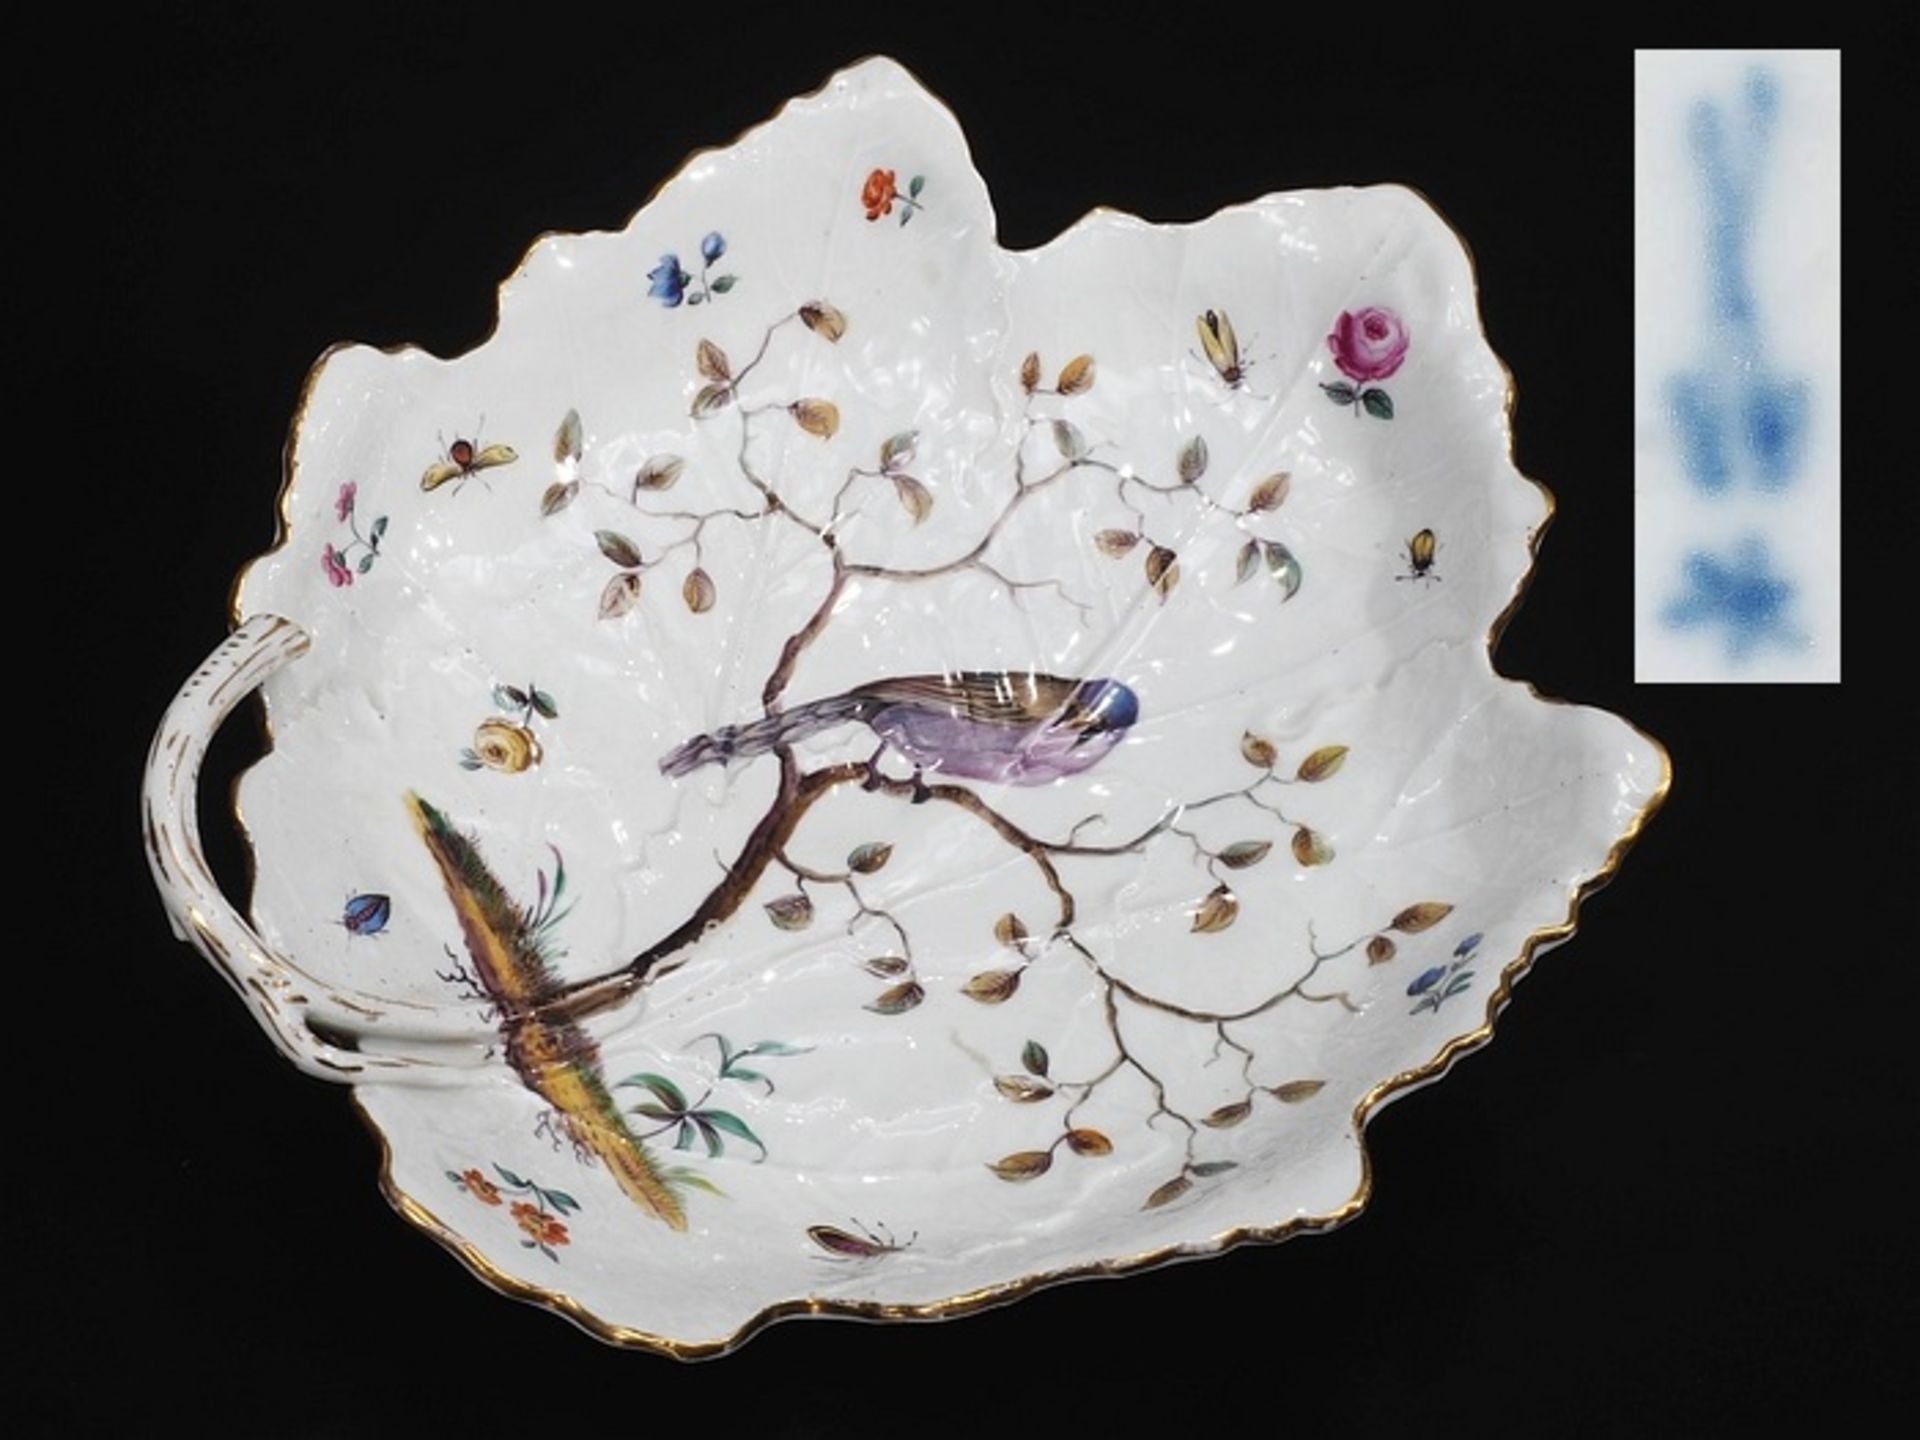 Blattschale mit Singvogel. MEISSEN, 18./19. Jahrhundert. Gezackte, gemuldete Form mit astförmiger